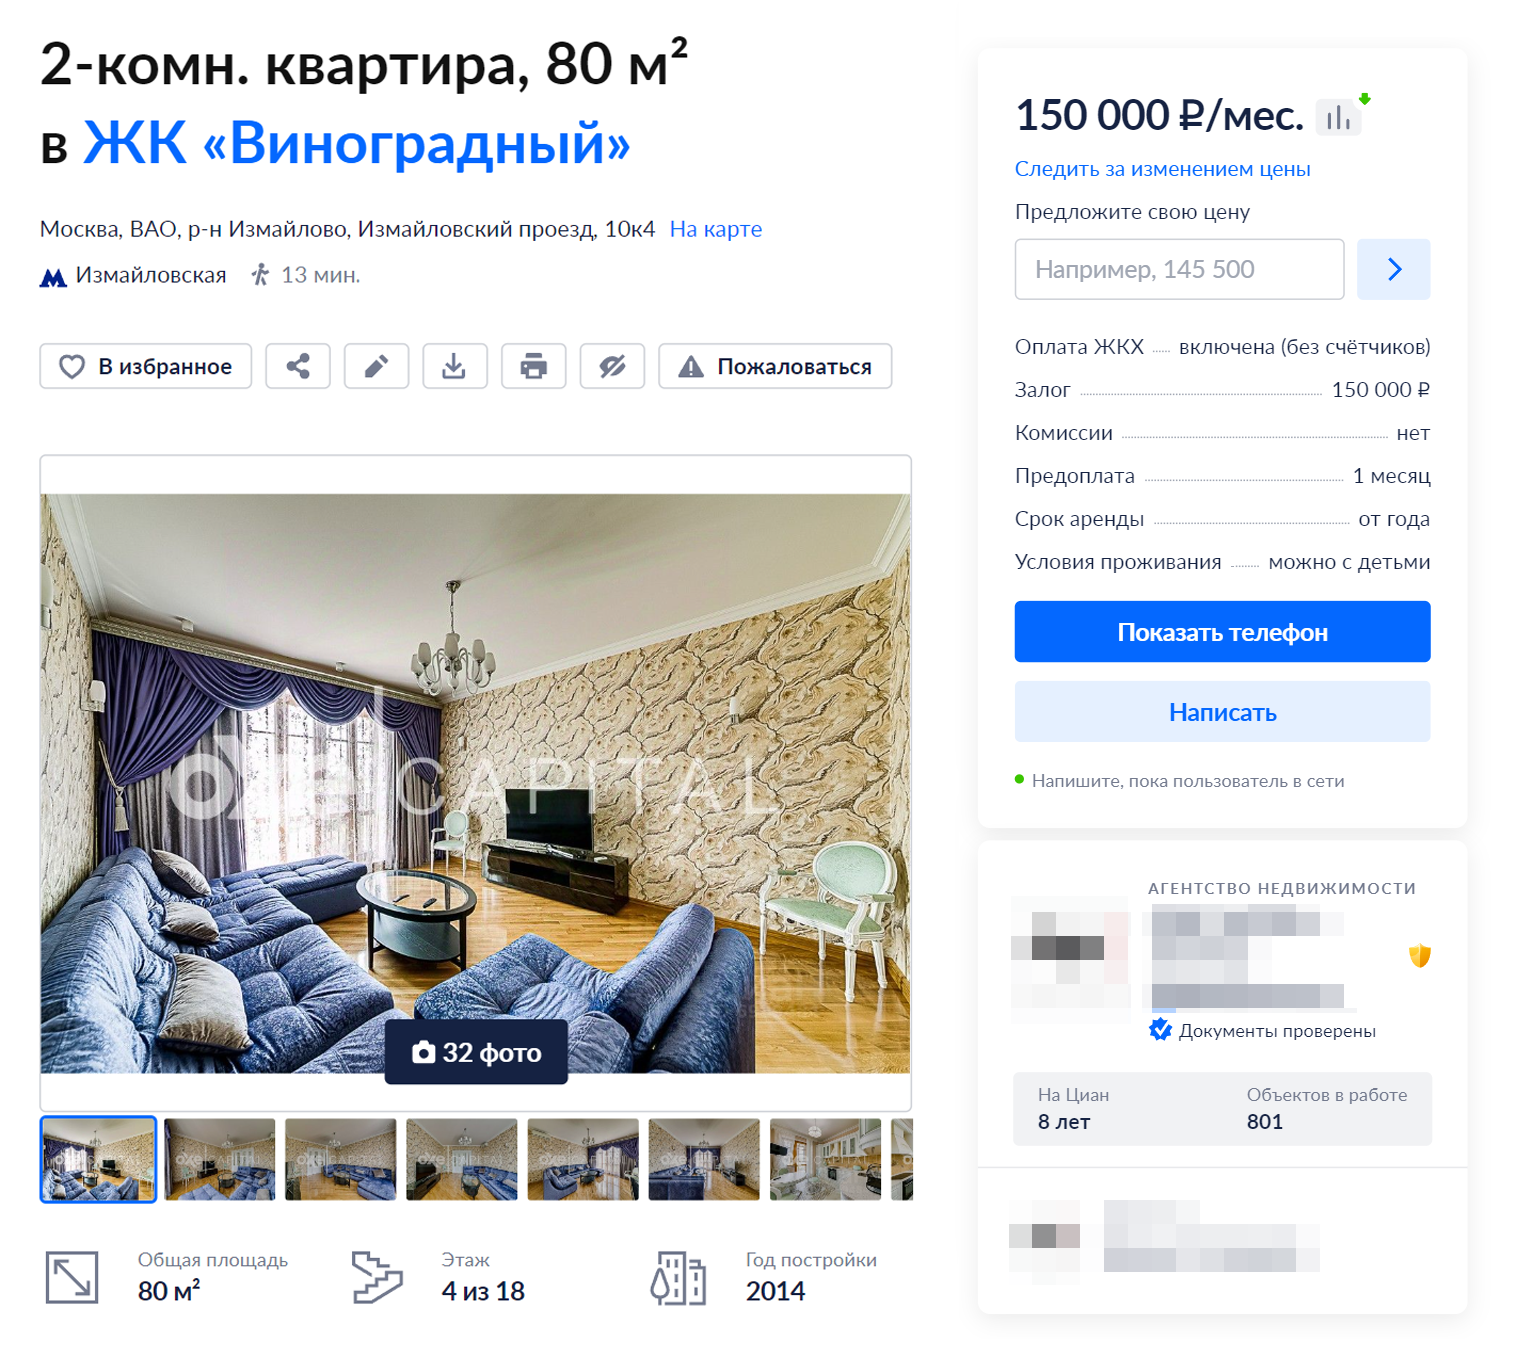 Владельцы квартир в «Виноградном» почти всегда оформляют их в «царском» стиле — цены там соответствующие. Источник: cian.ru